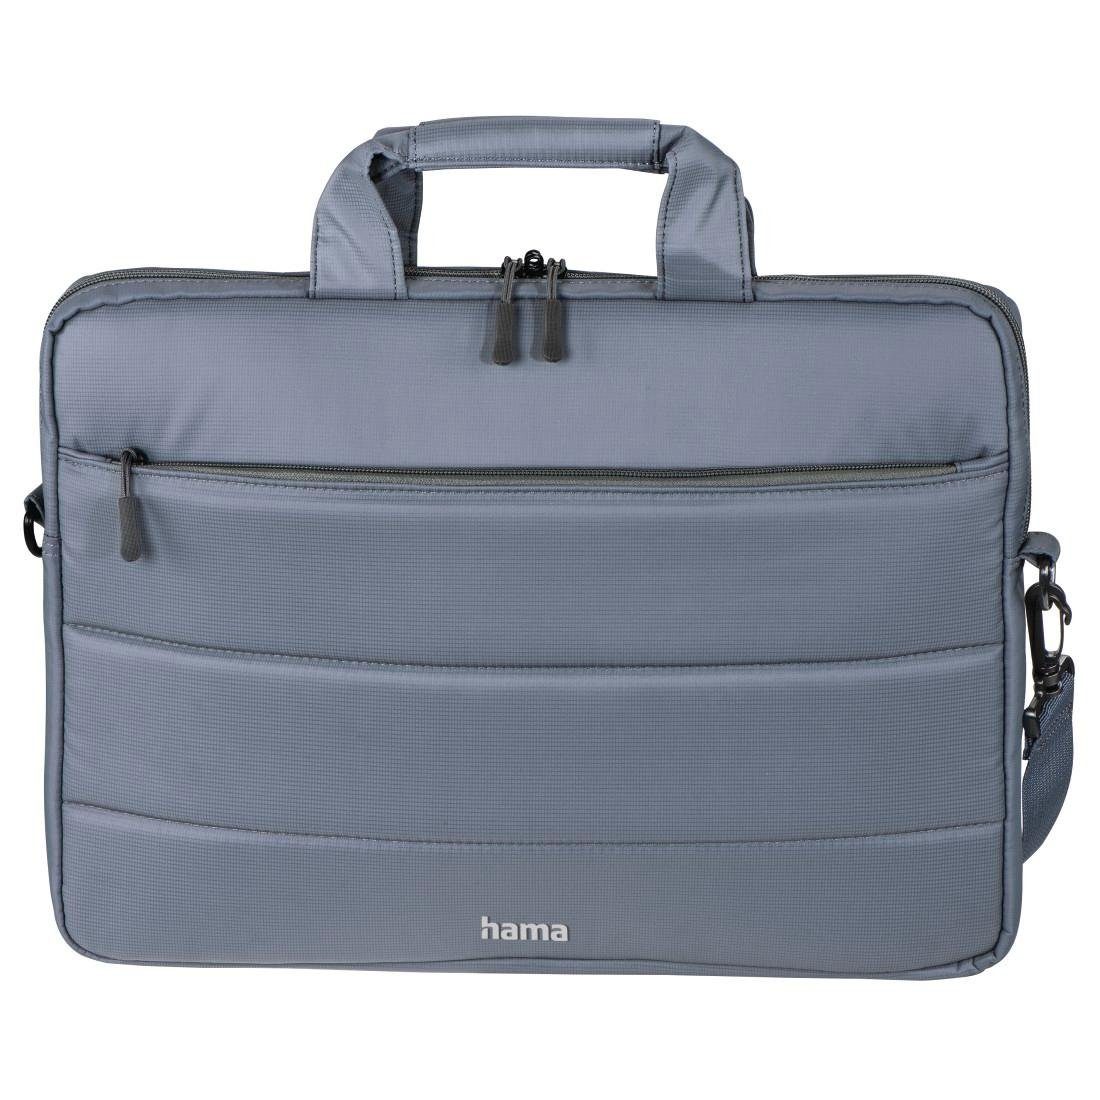 Hama Laptoptasche Notebook Tasche bis 40 cm (15,6 Zoll) aus Nylon, eleganter Look, Mit Tablet- und Dokumentenfach, Organizerstruktur und Trolleyband